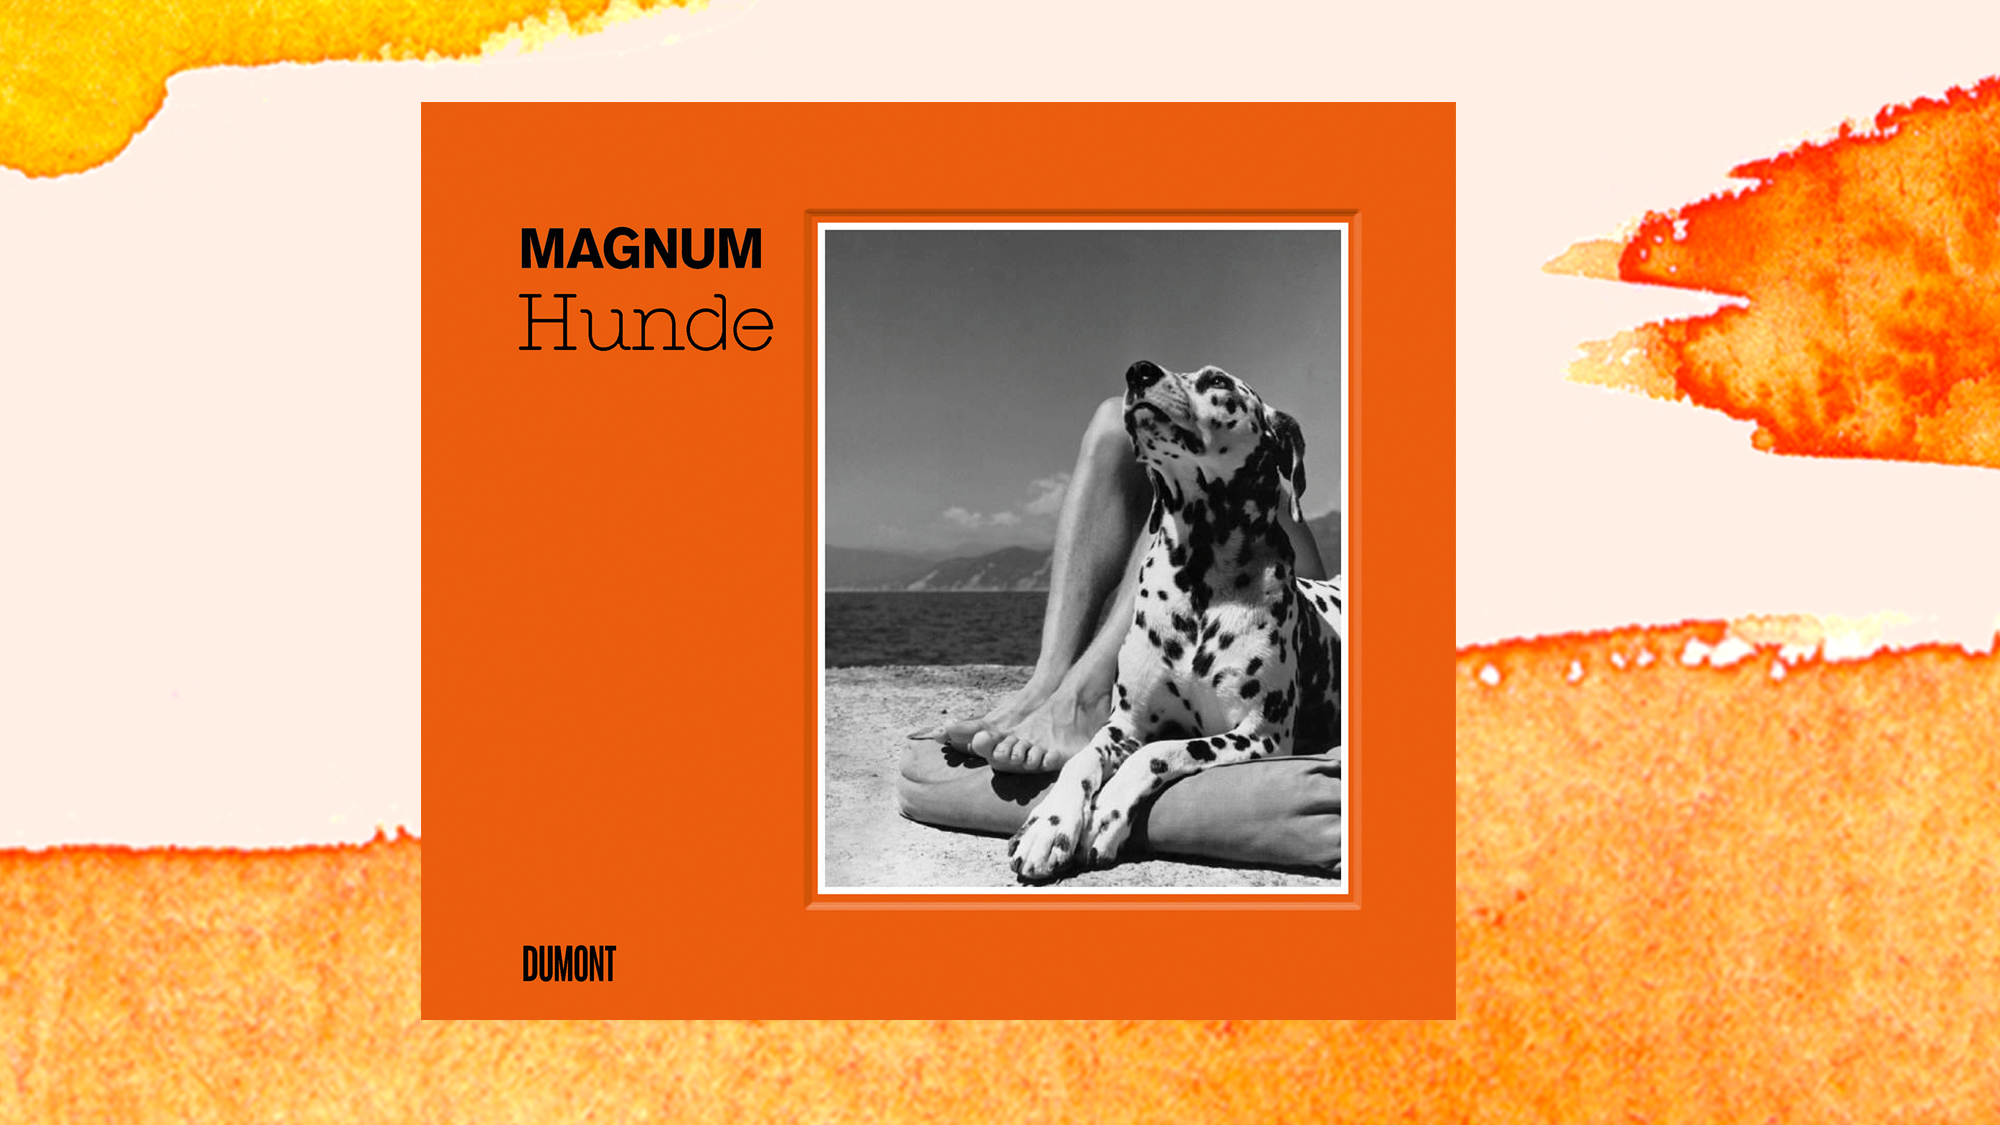 Bildband "Magnum Hunde" - Vierbeiner in allen Lebenslagen